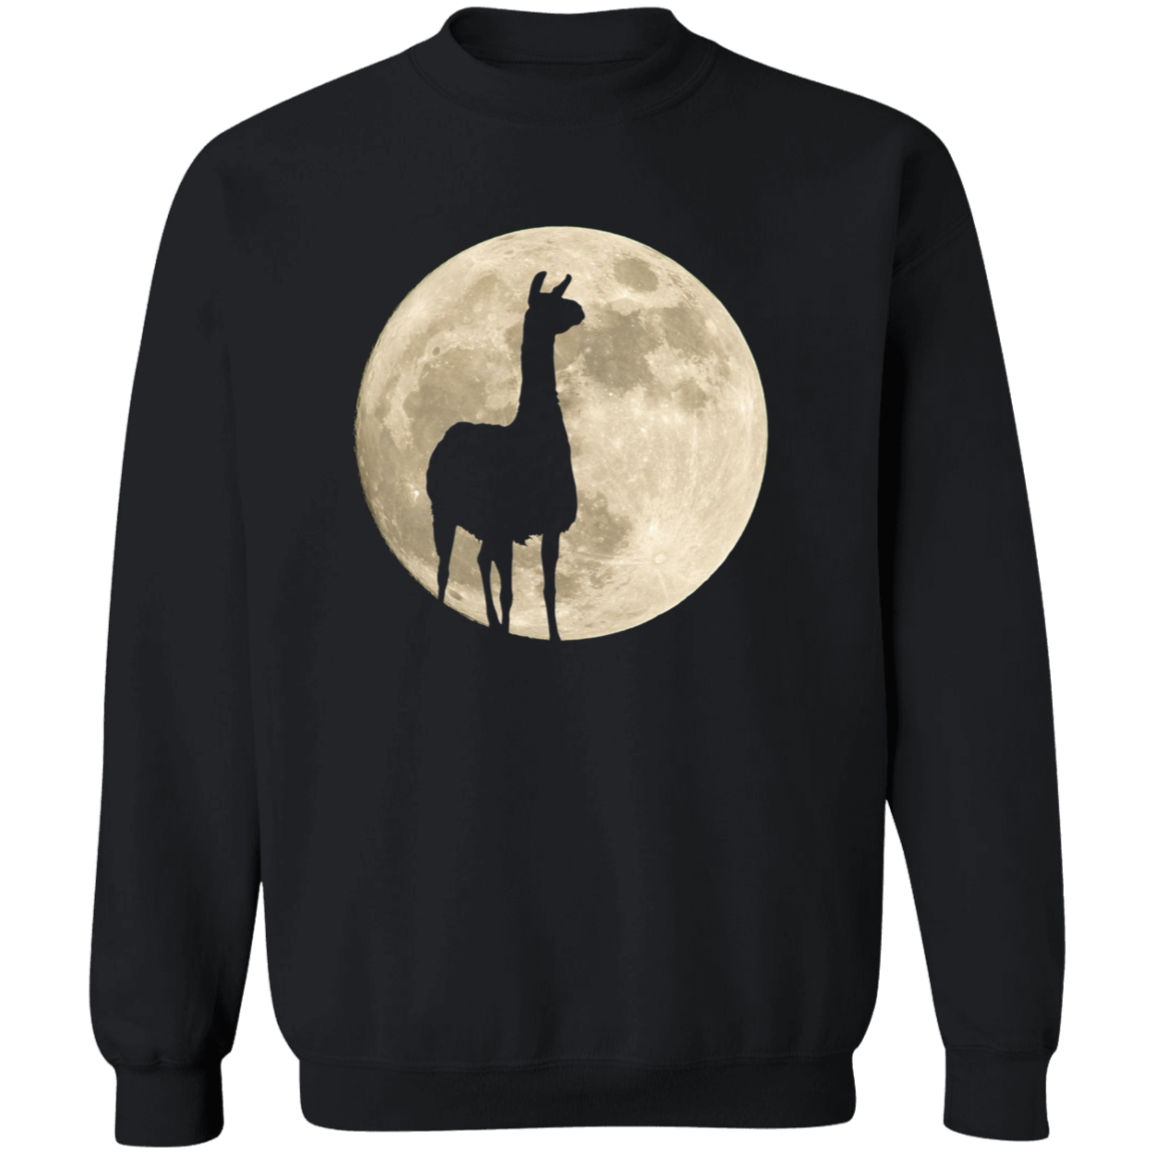 Llama Moon - T-shirts, Hoodies and Sweatshirts